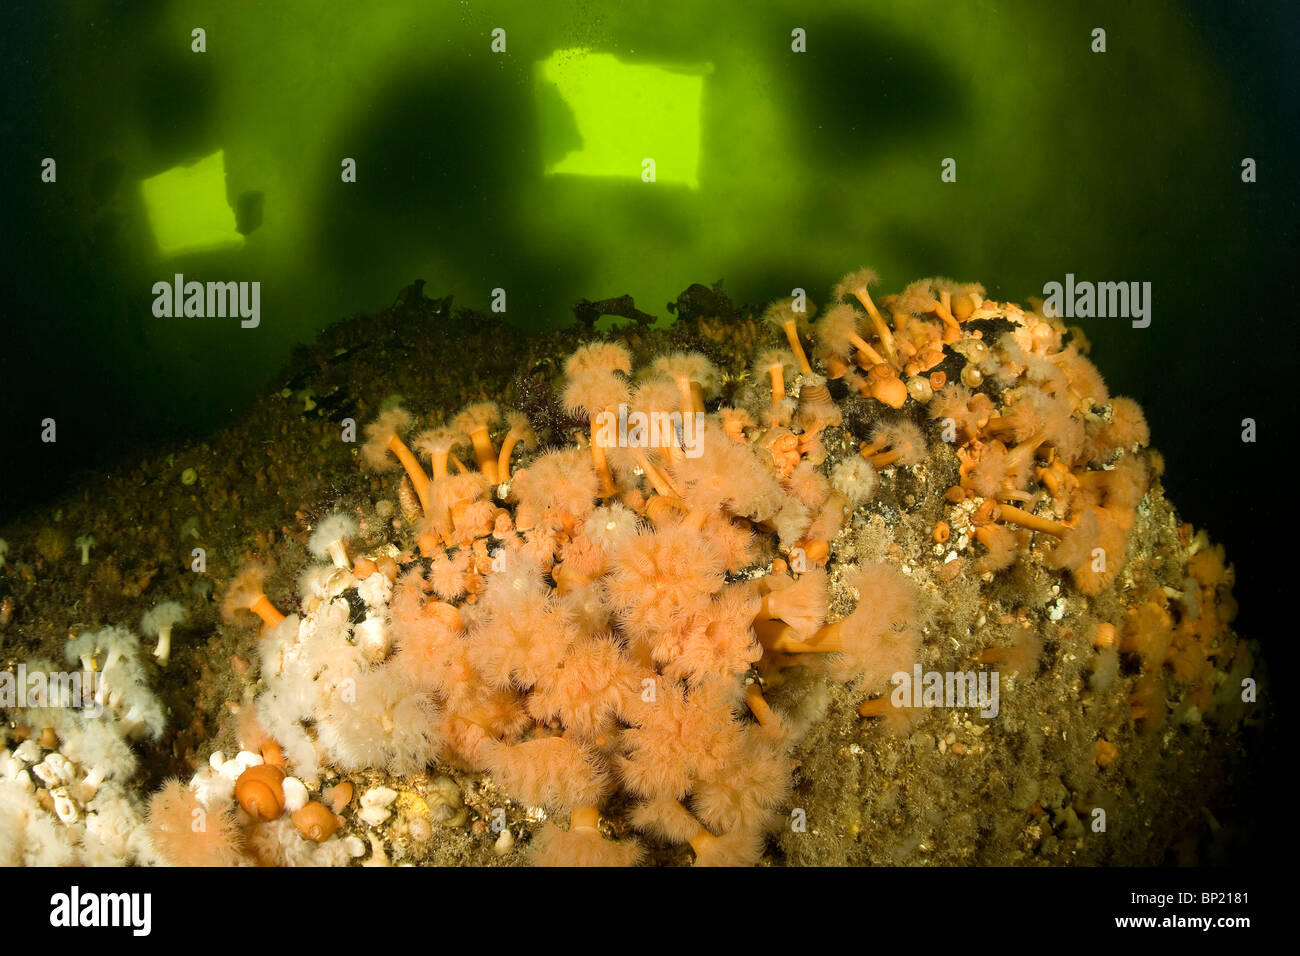 Plumose Anemone under Ice, Metridium senile, White Sea, Karelia, Russia Stock Photo